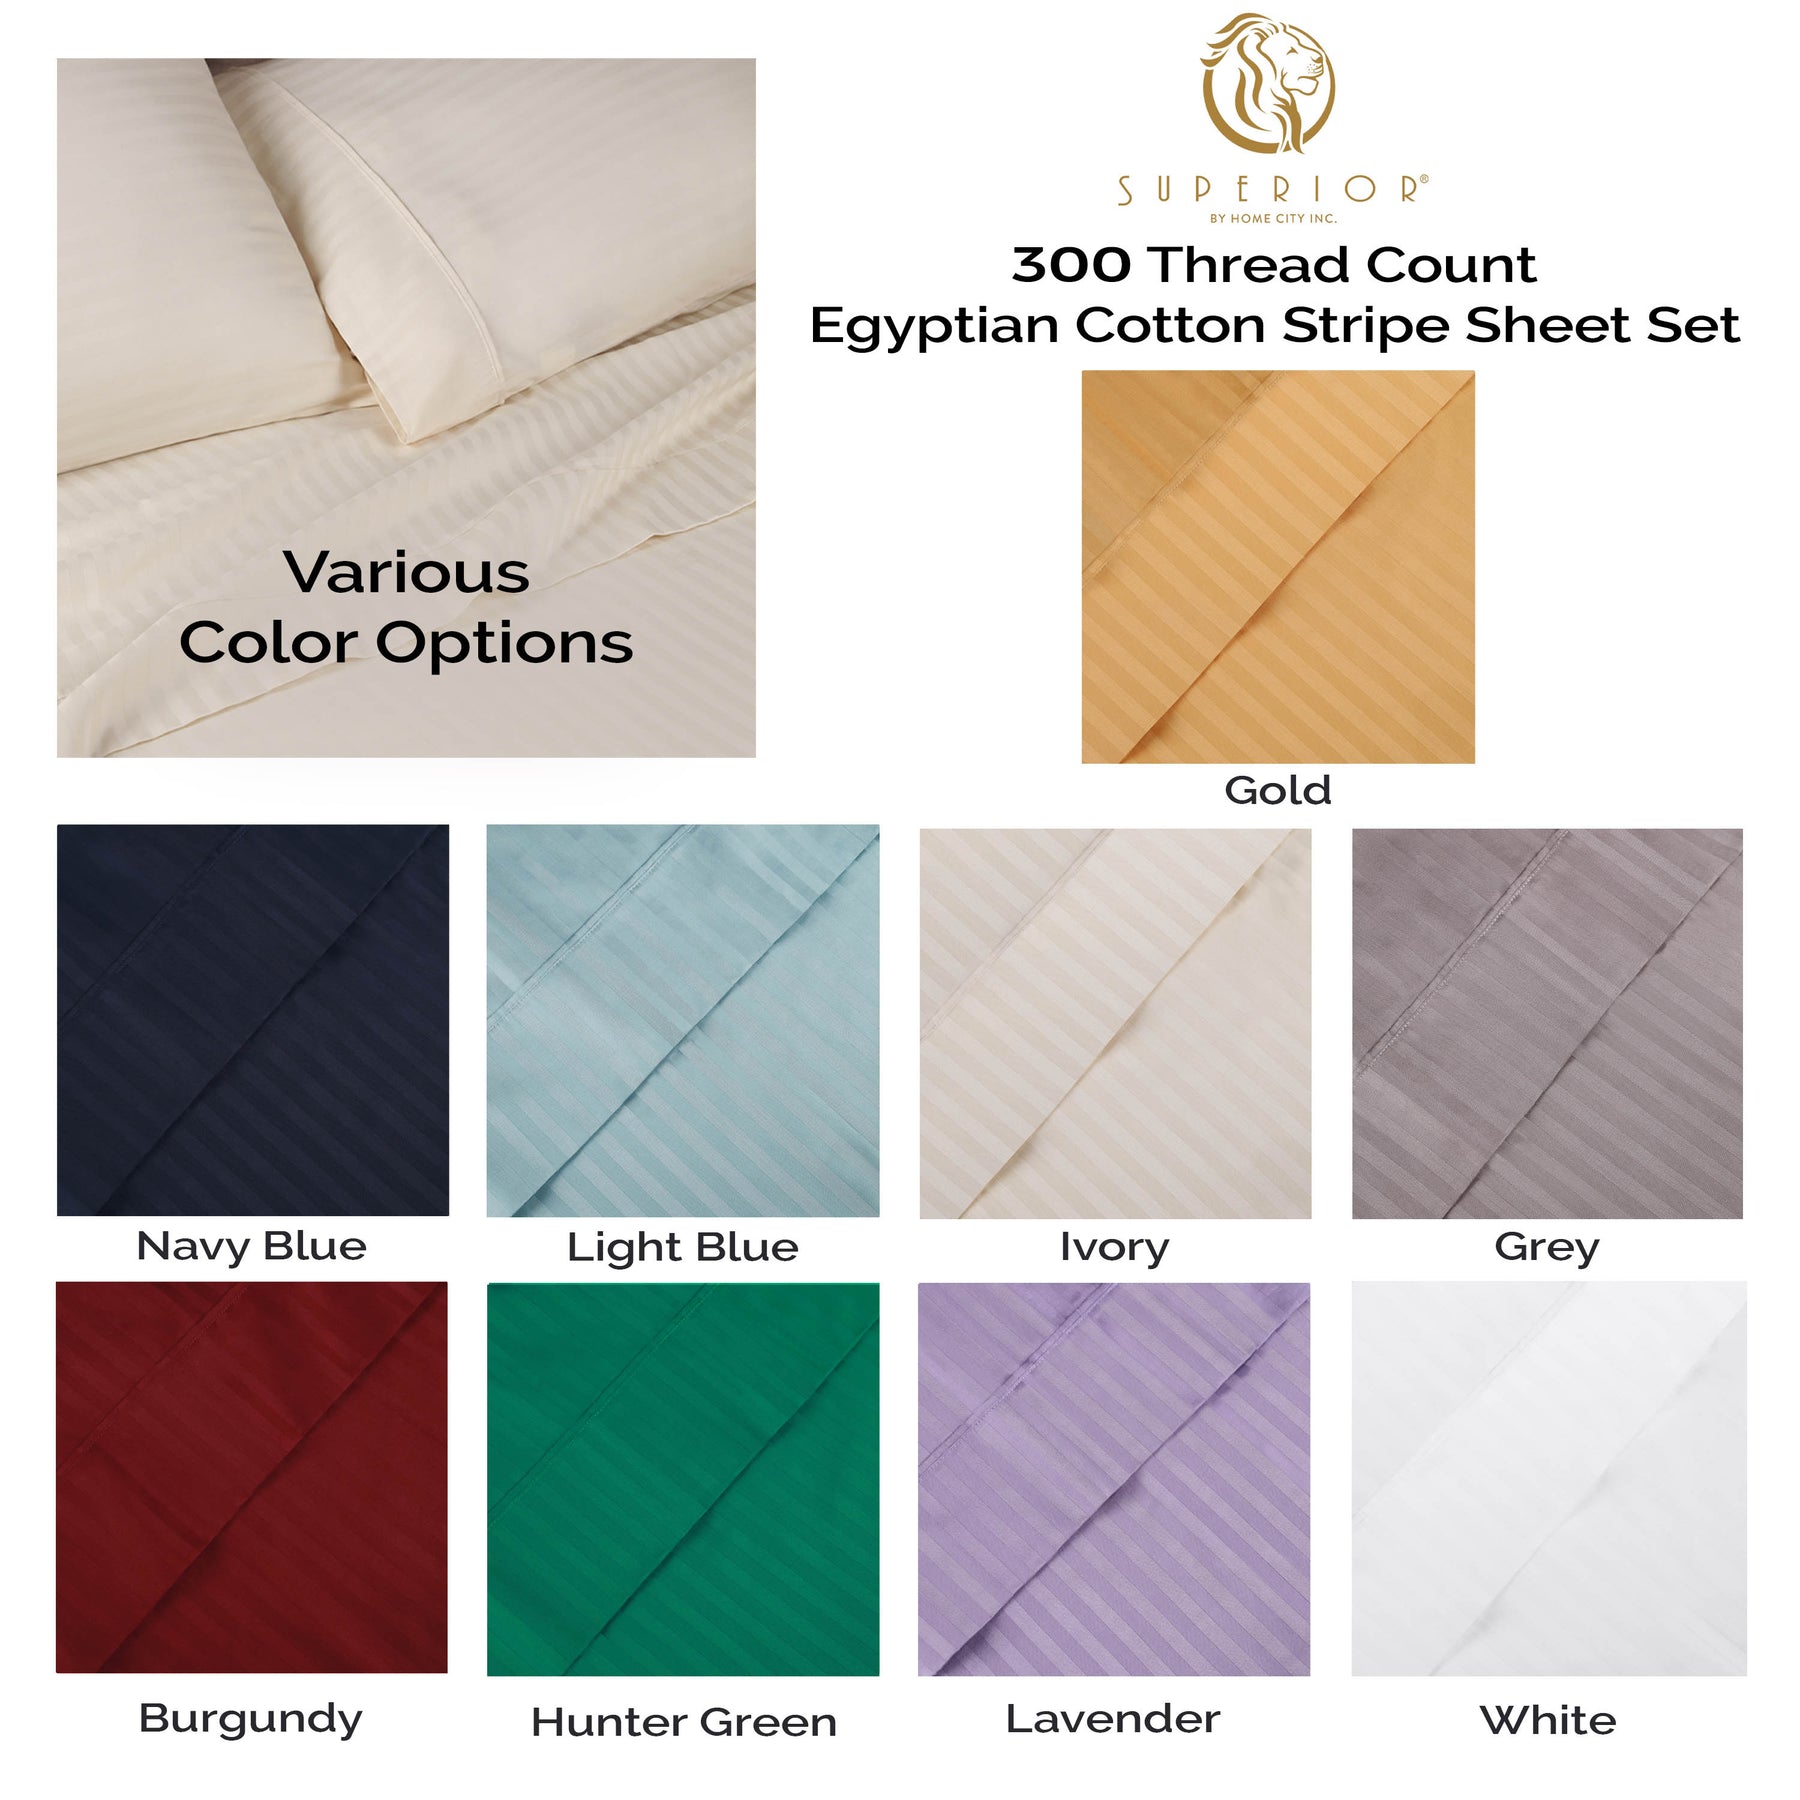 Superior 300 Thread Count Premium Egyptian Cotton Stripe Sheet Set